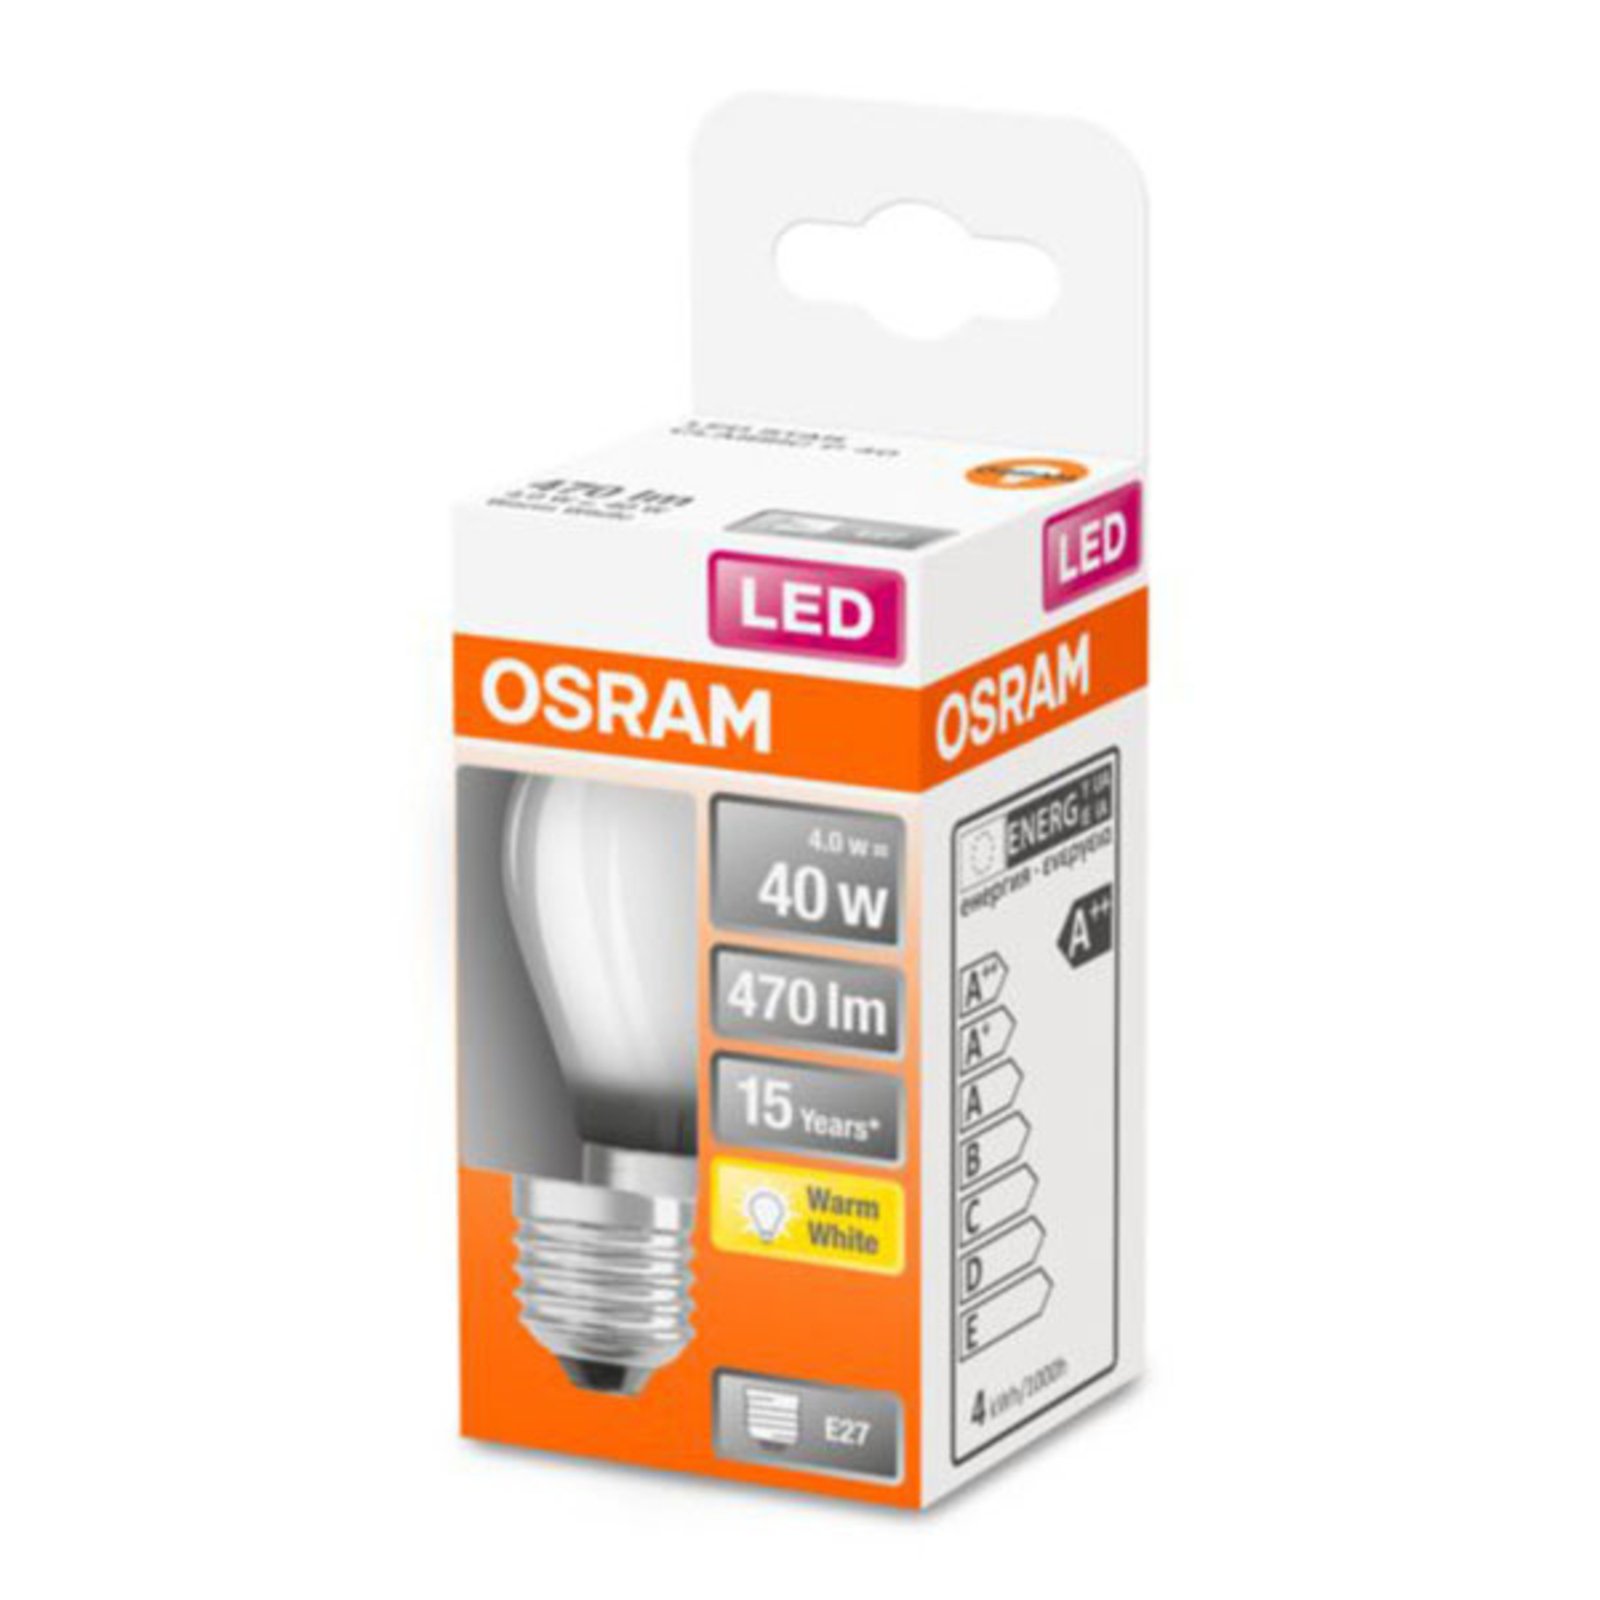 OSRAM Classic P ampoule LED E27 4 W 2 700 K mate